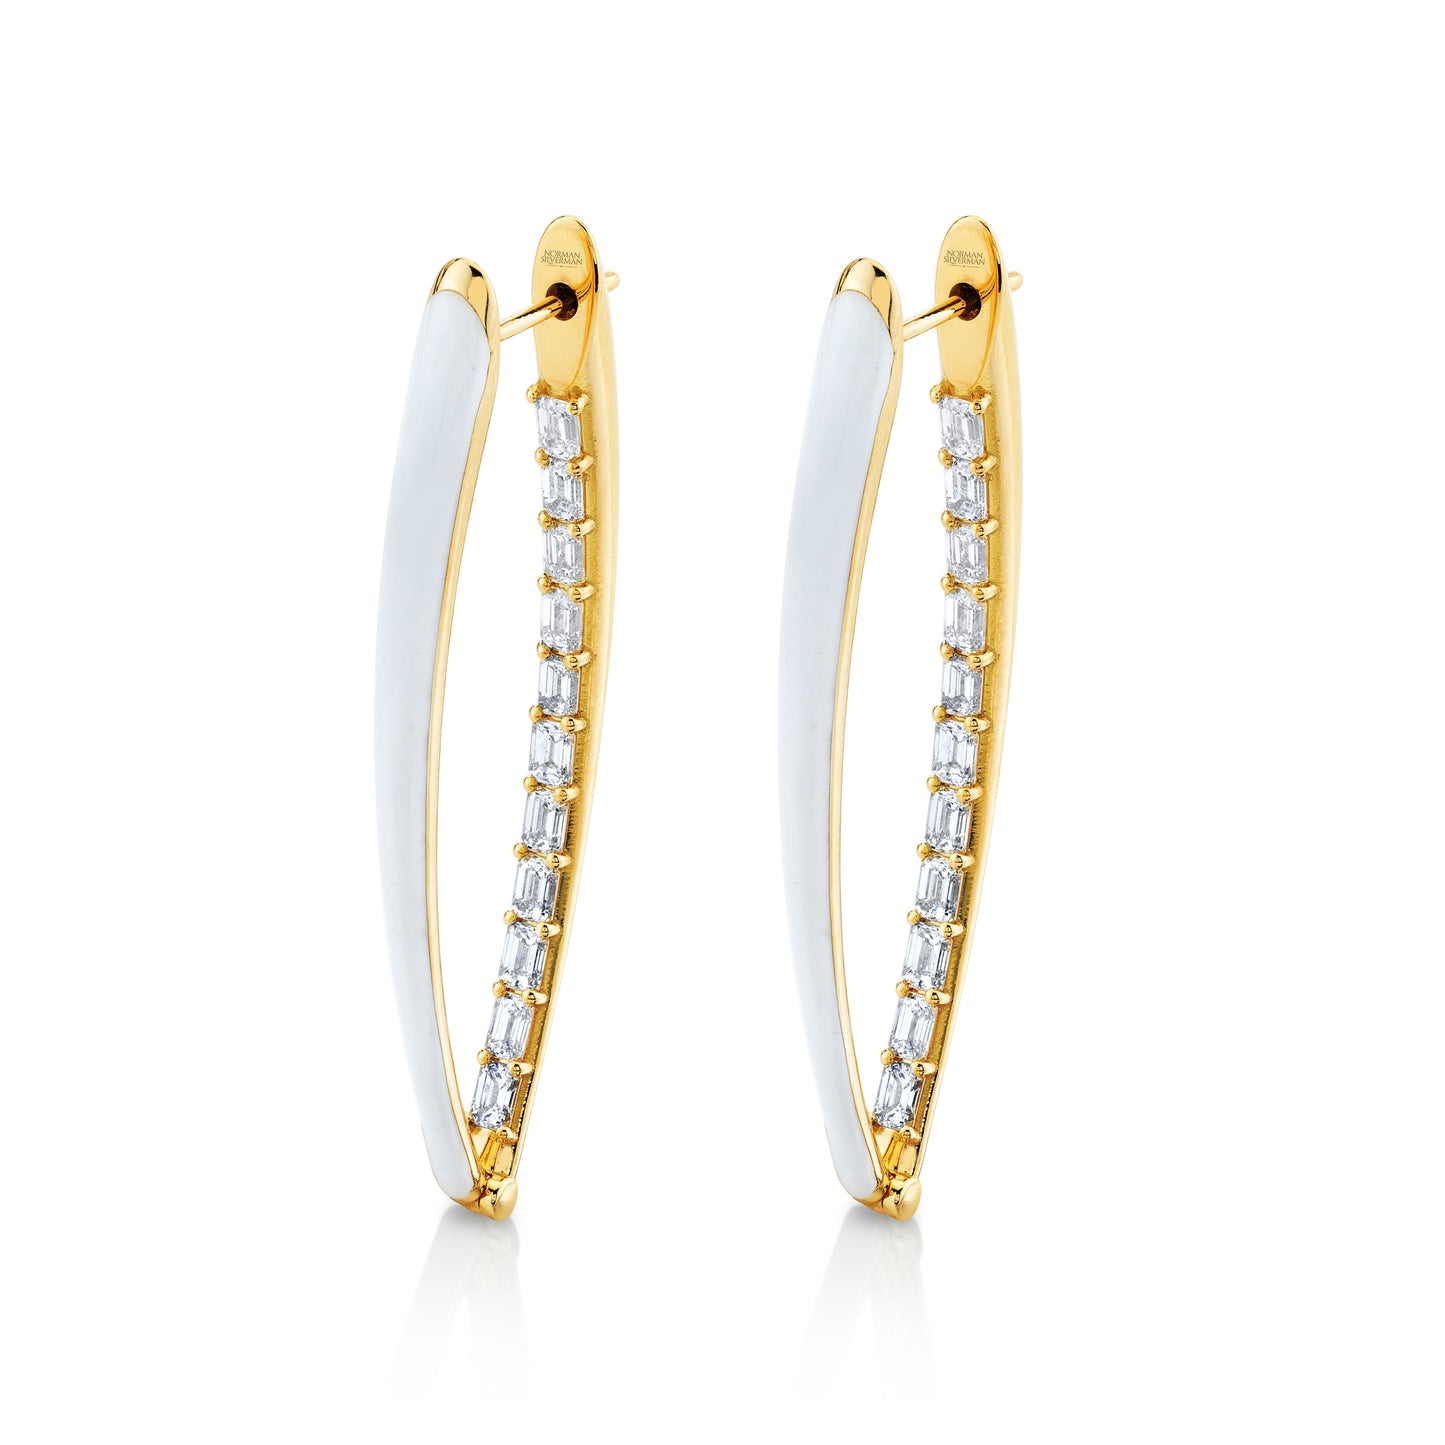 Diamond Hoop Earrings with White Enamel